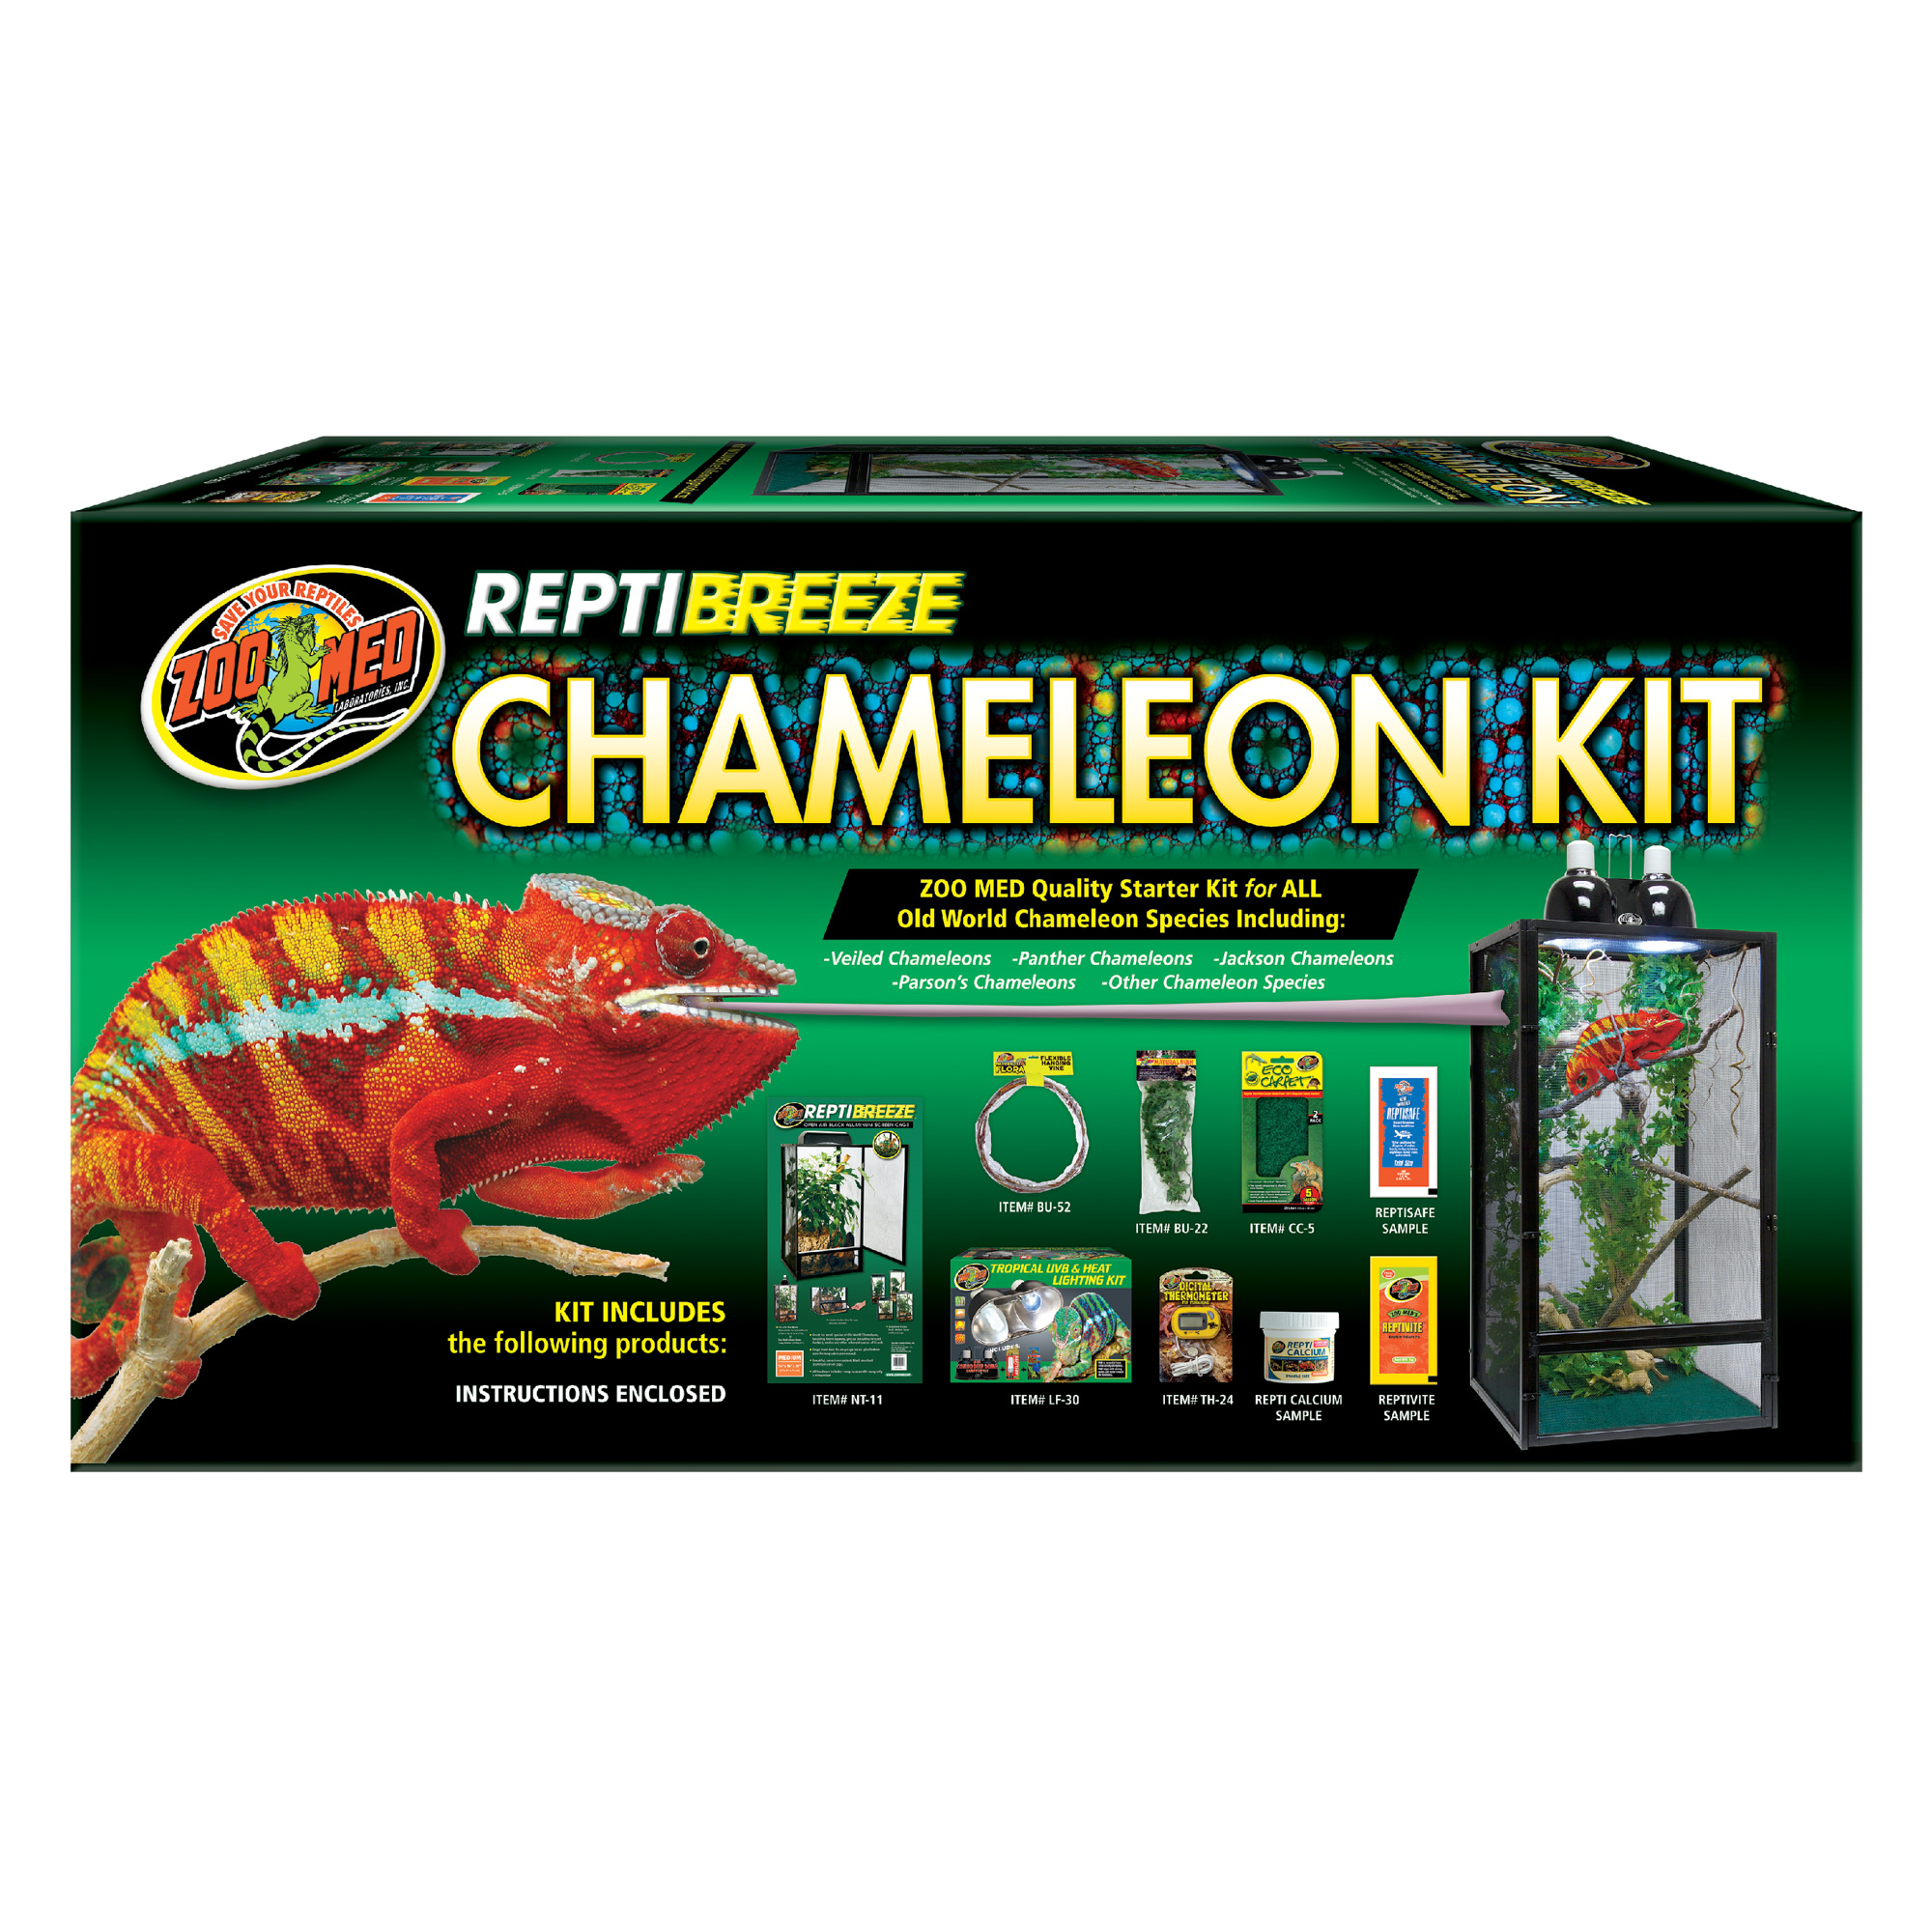 Veiled Chameleon Care Sheet | Petco